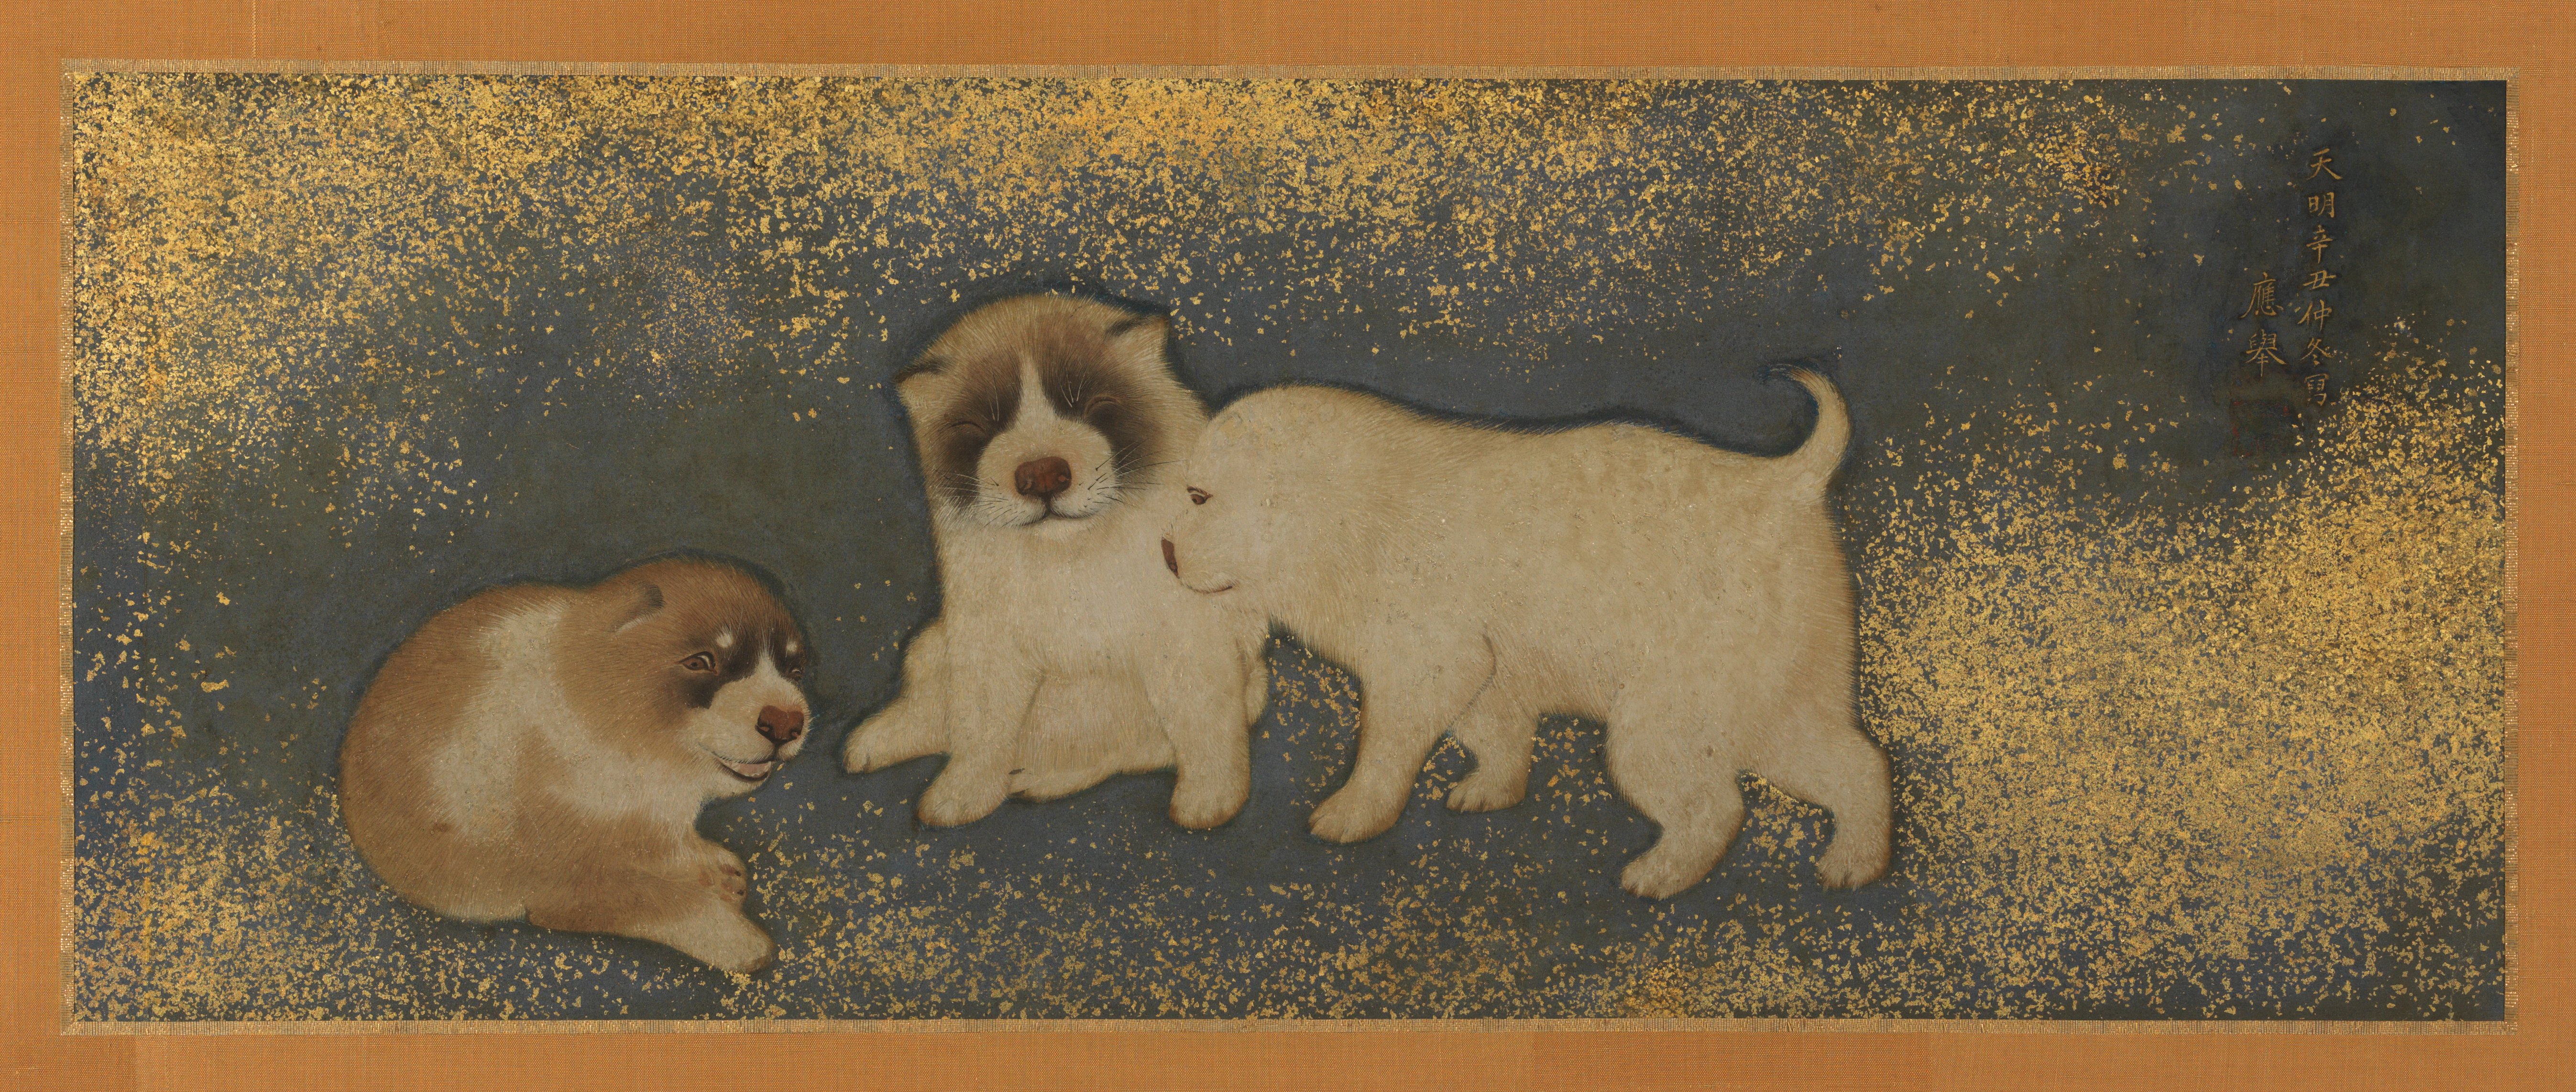 강아지들 (Puppies) by Maruyama Ōkyo - 1781 - 24.45 × 63.18 cm 